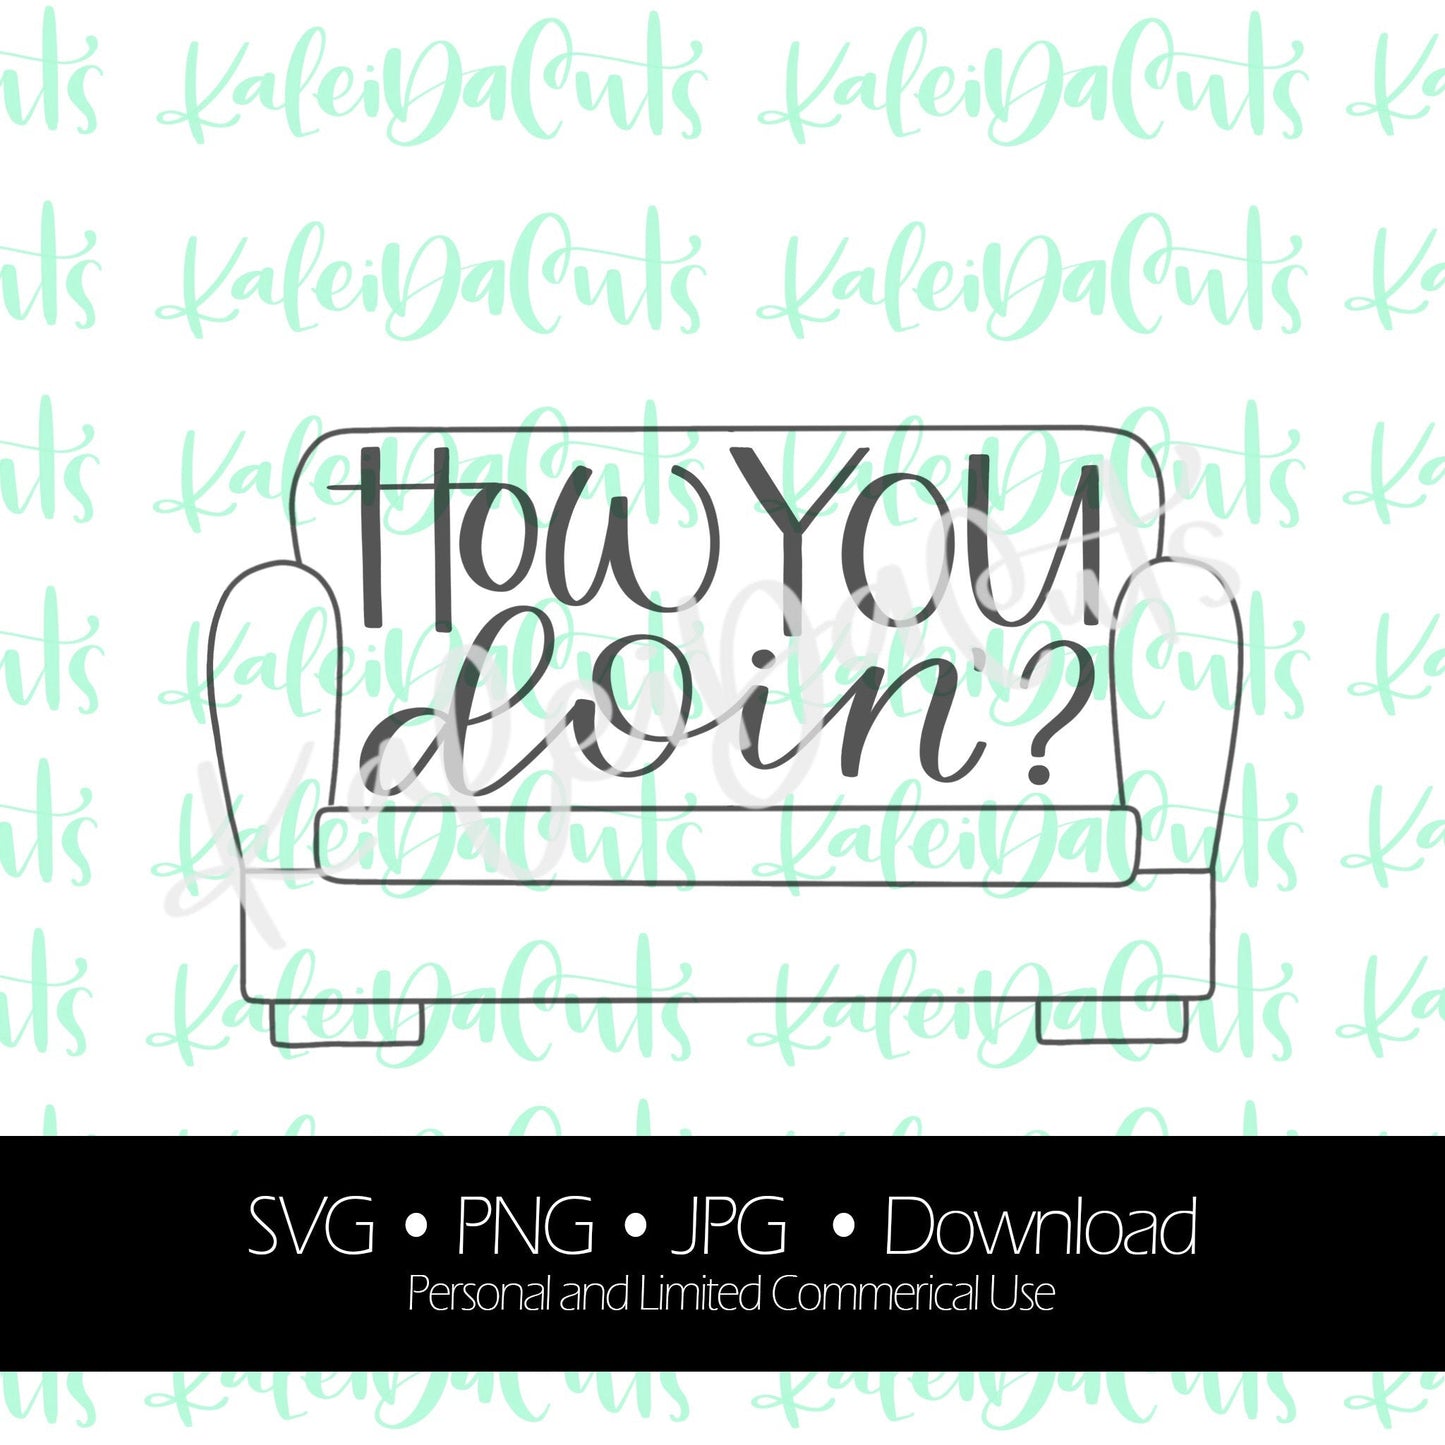 How You Doin' Lettering. SVG. Digital Download. KaleidaCuts Handlettering.